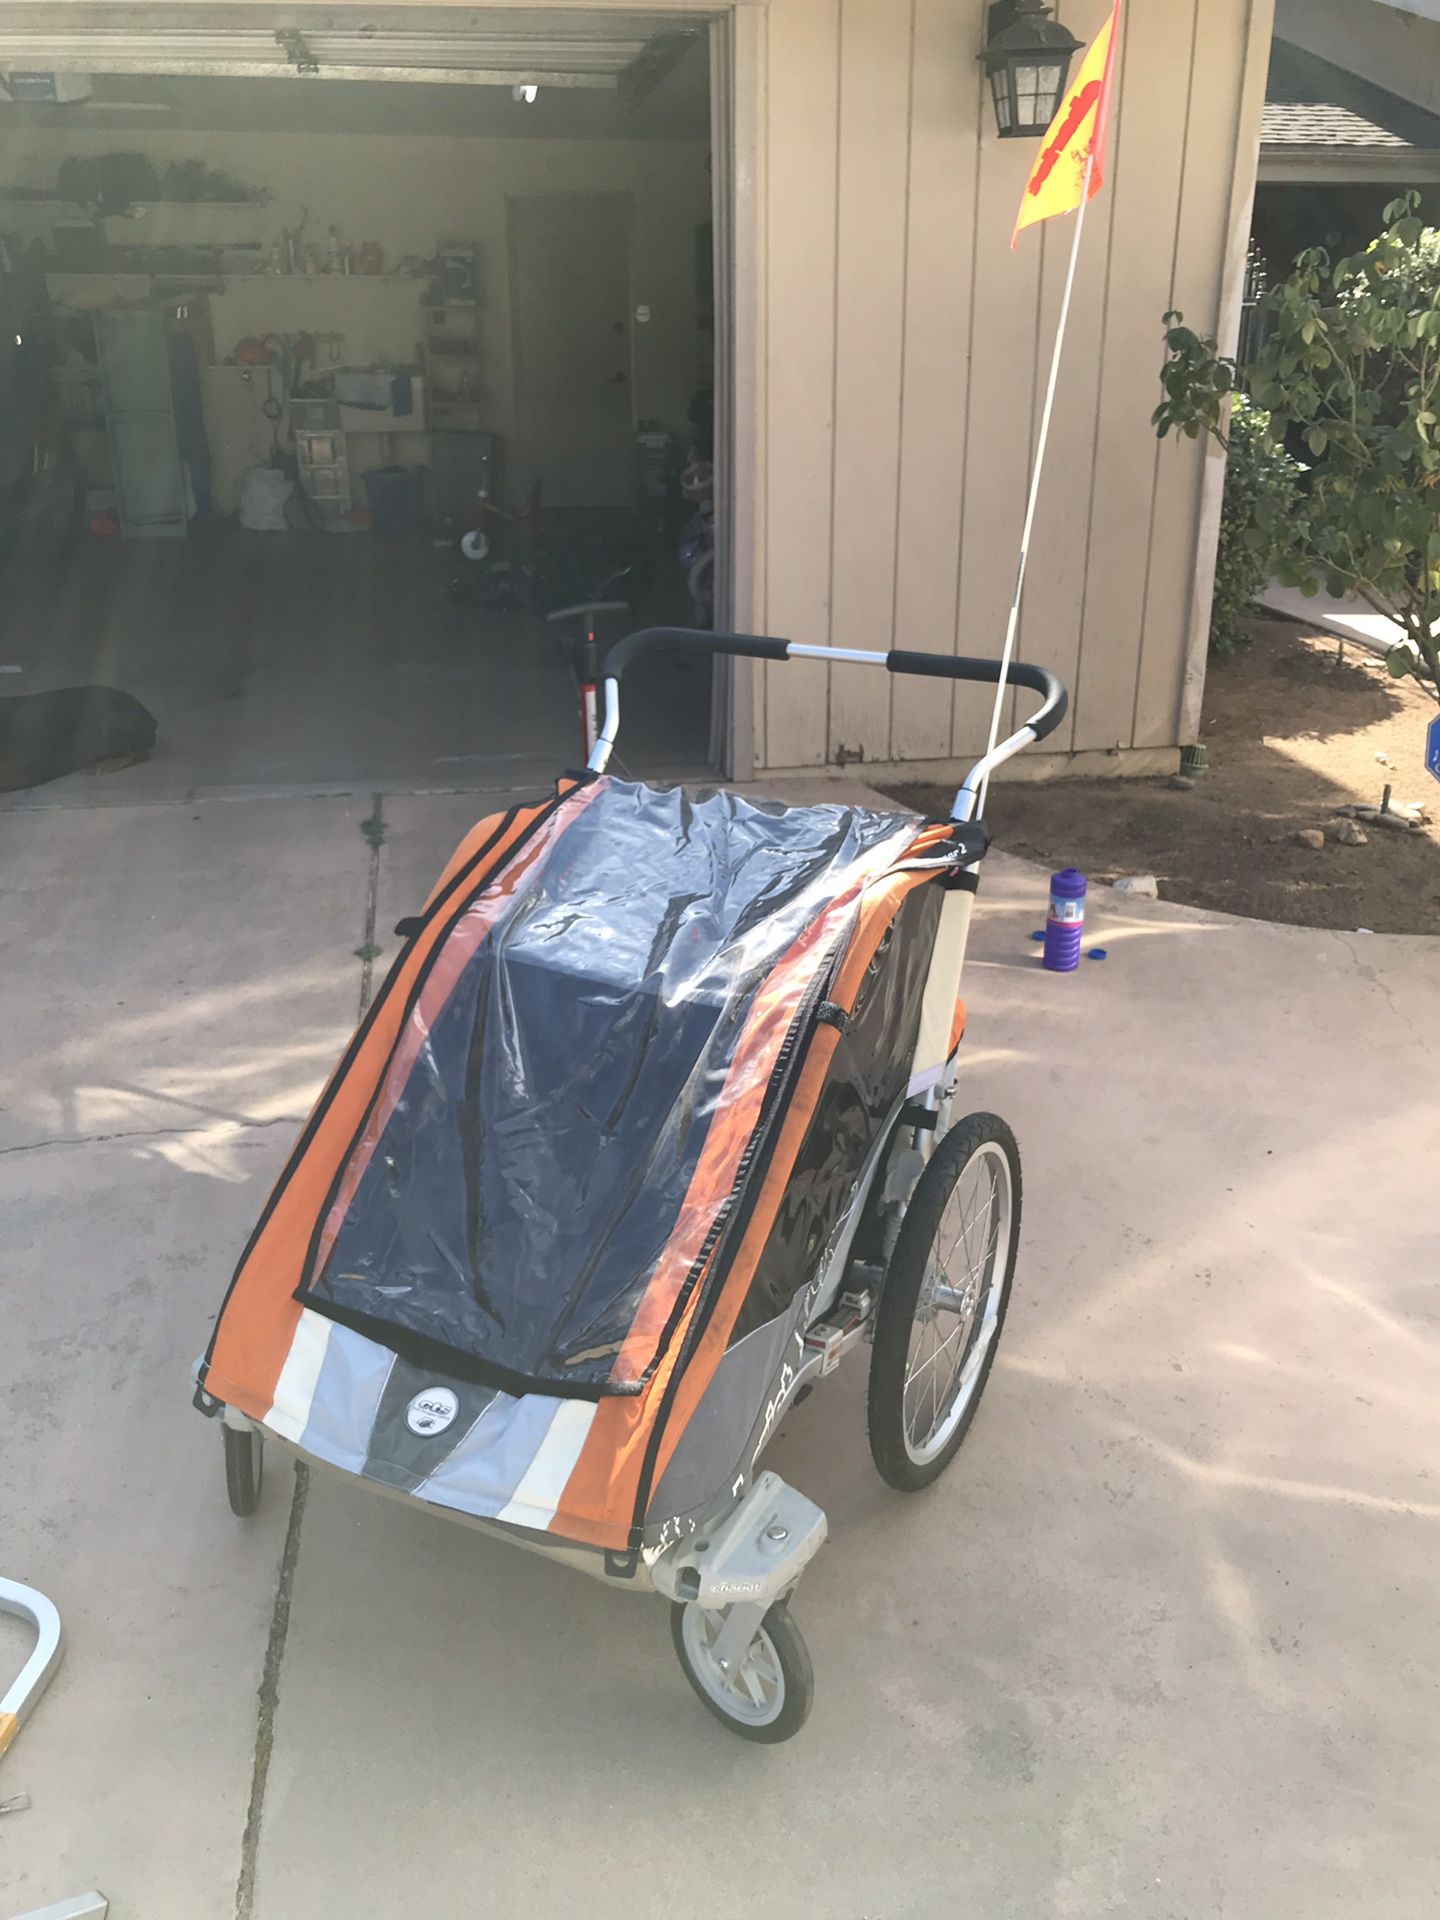 Chariot Cougar 2 jogging stroller